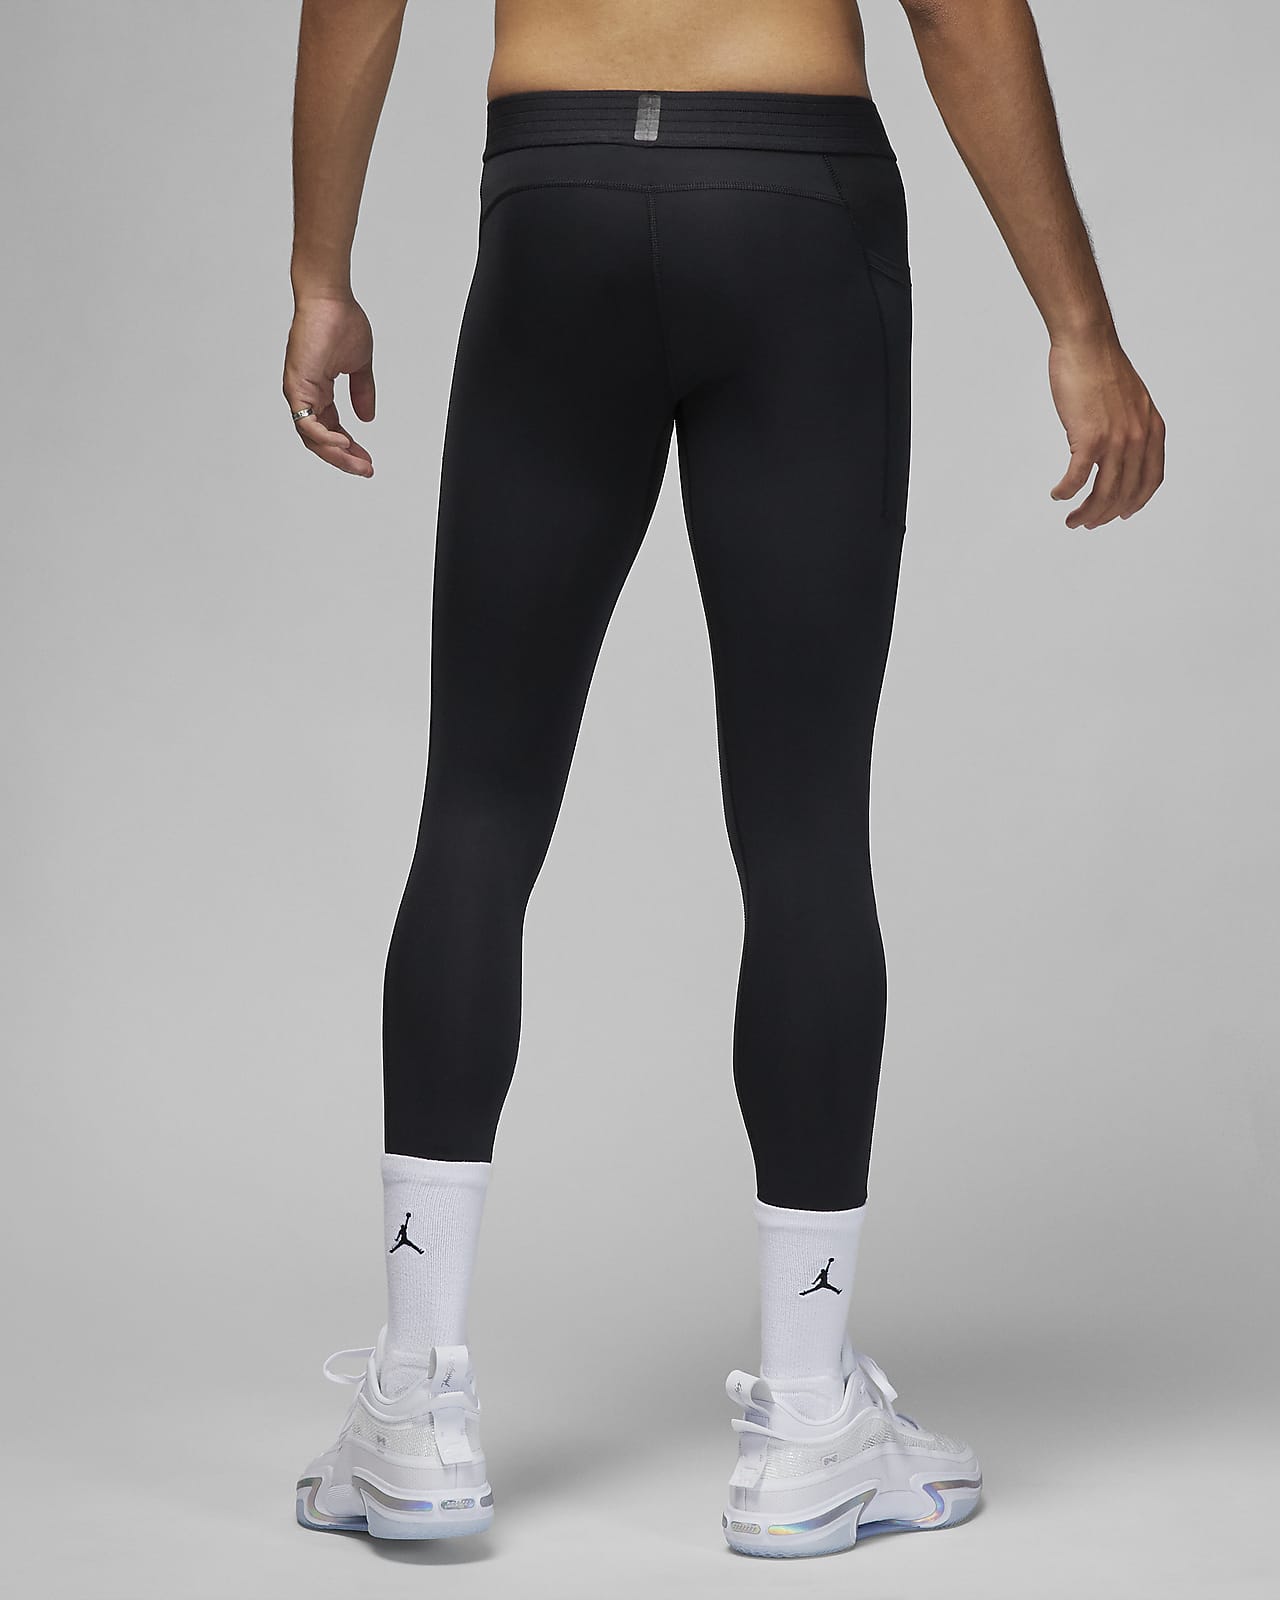 Buy Nike PRO Dri-FIT Fitness 3/4 Black Tights